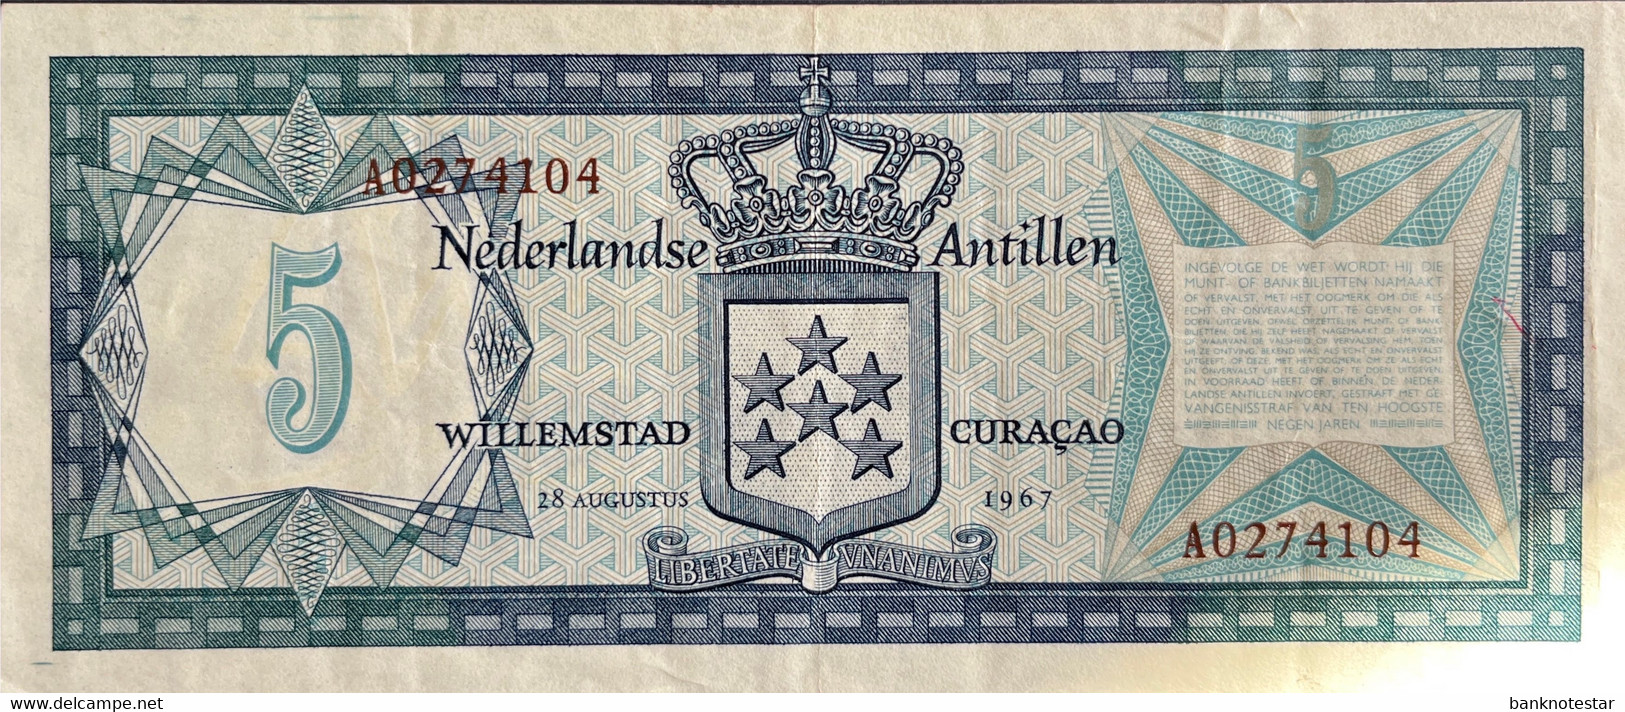 Netherland Antilles 5 Gulden, P-8a (28.8.1967) - Very Fine - Netherlands Antilles (...-1986)